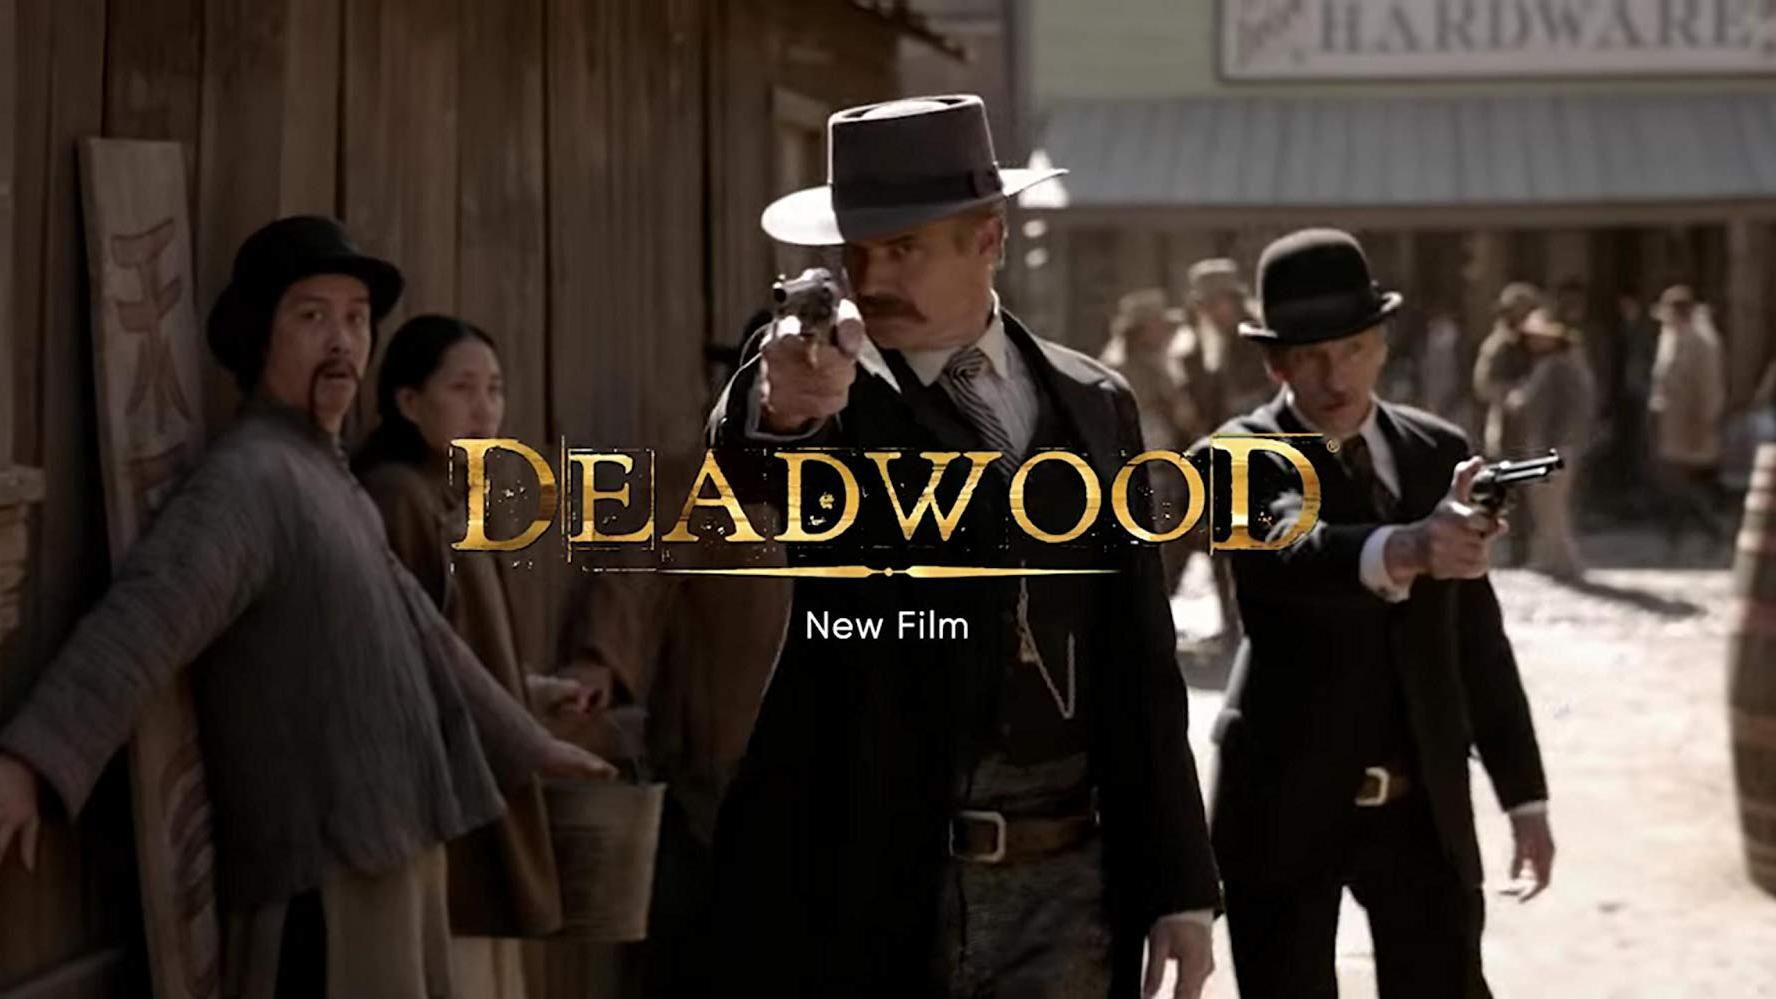 НВО опублікувалий перший трейлер до фільму "Дедвуд": відео